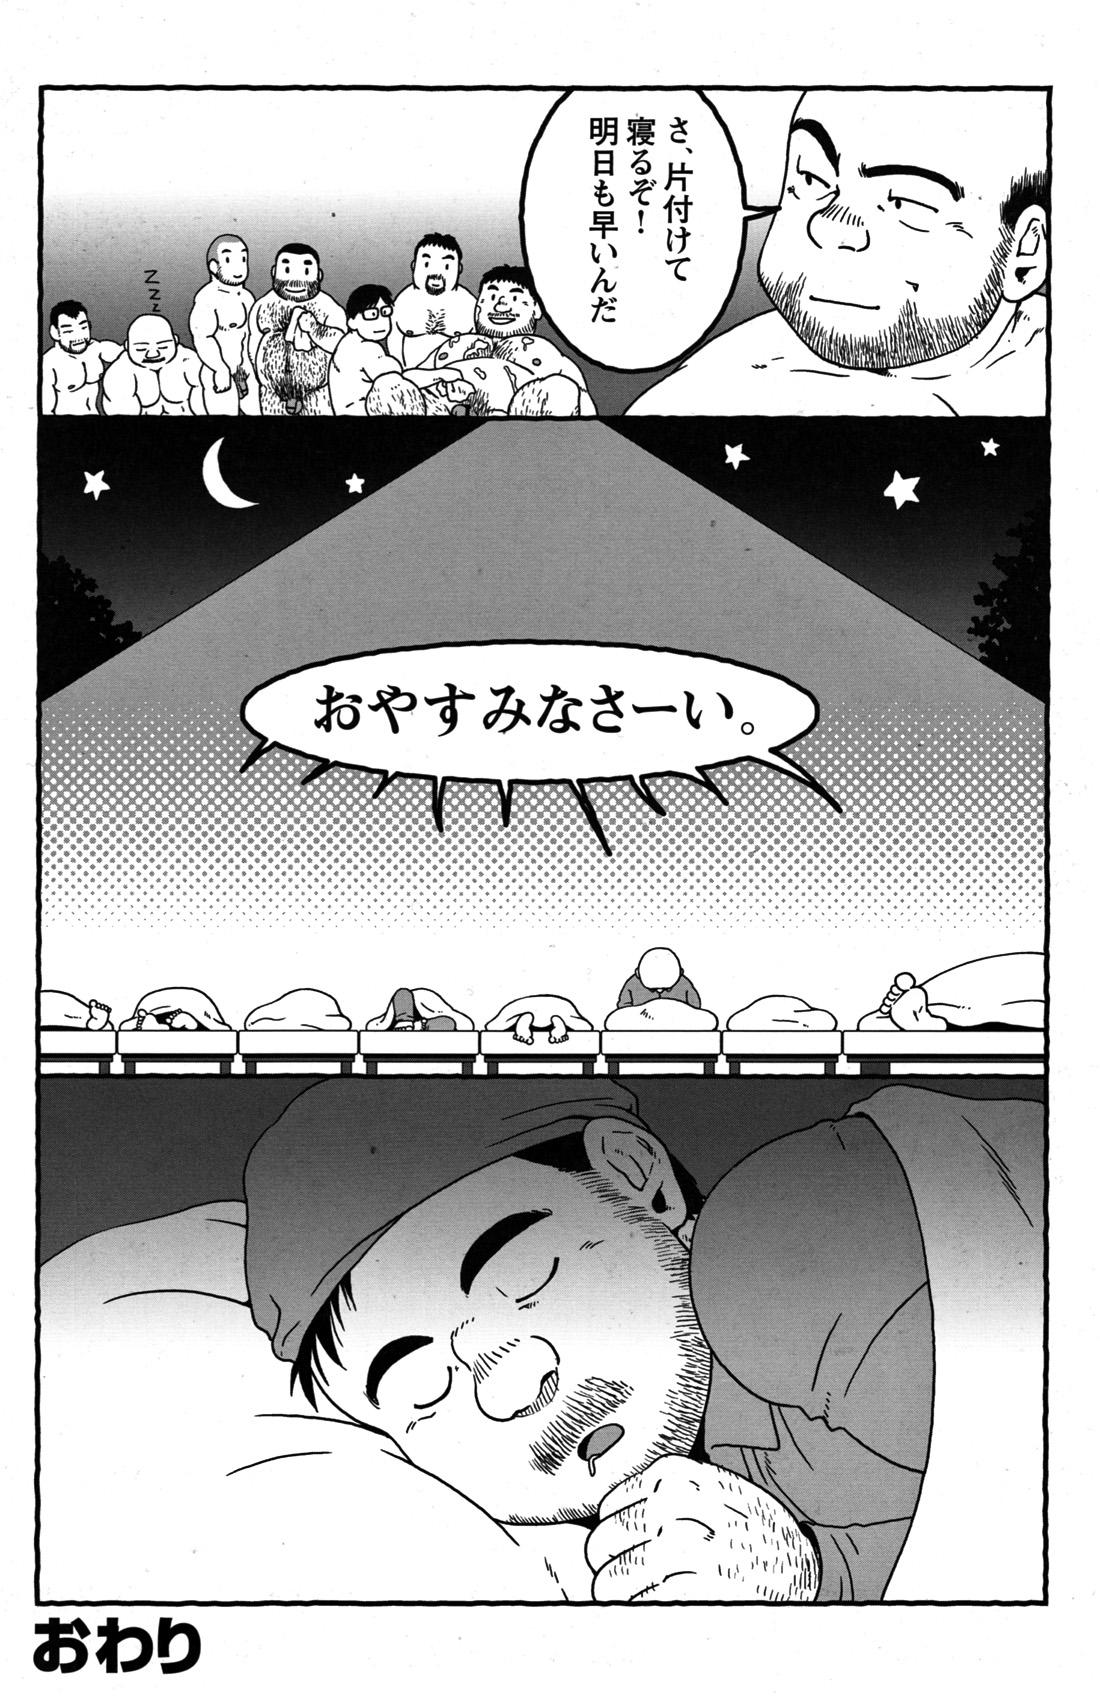 Comic G-men Gaho No.09 Gacchibi Zeme 143